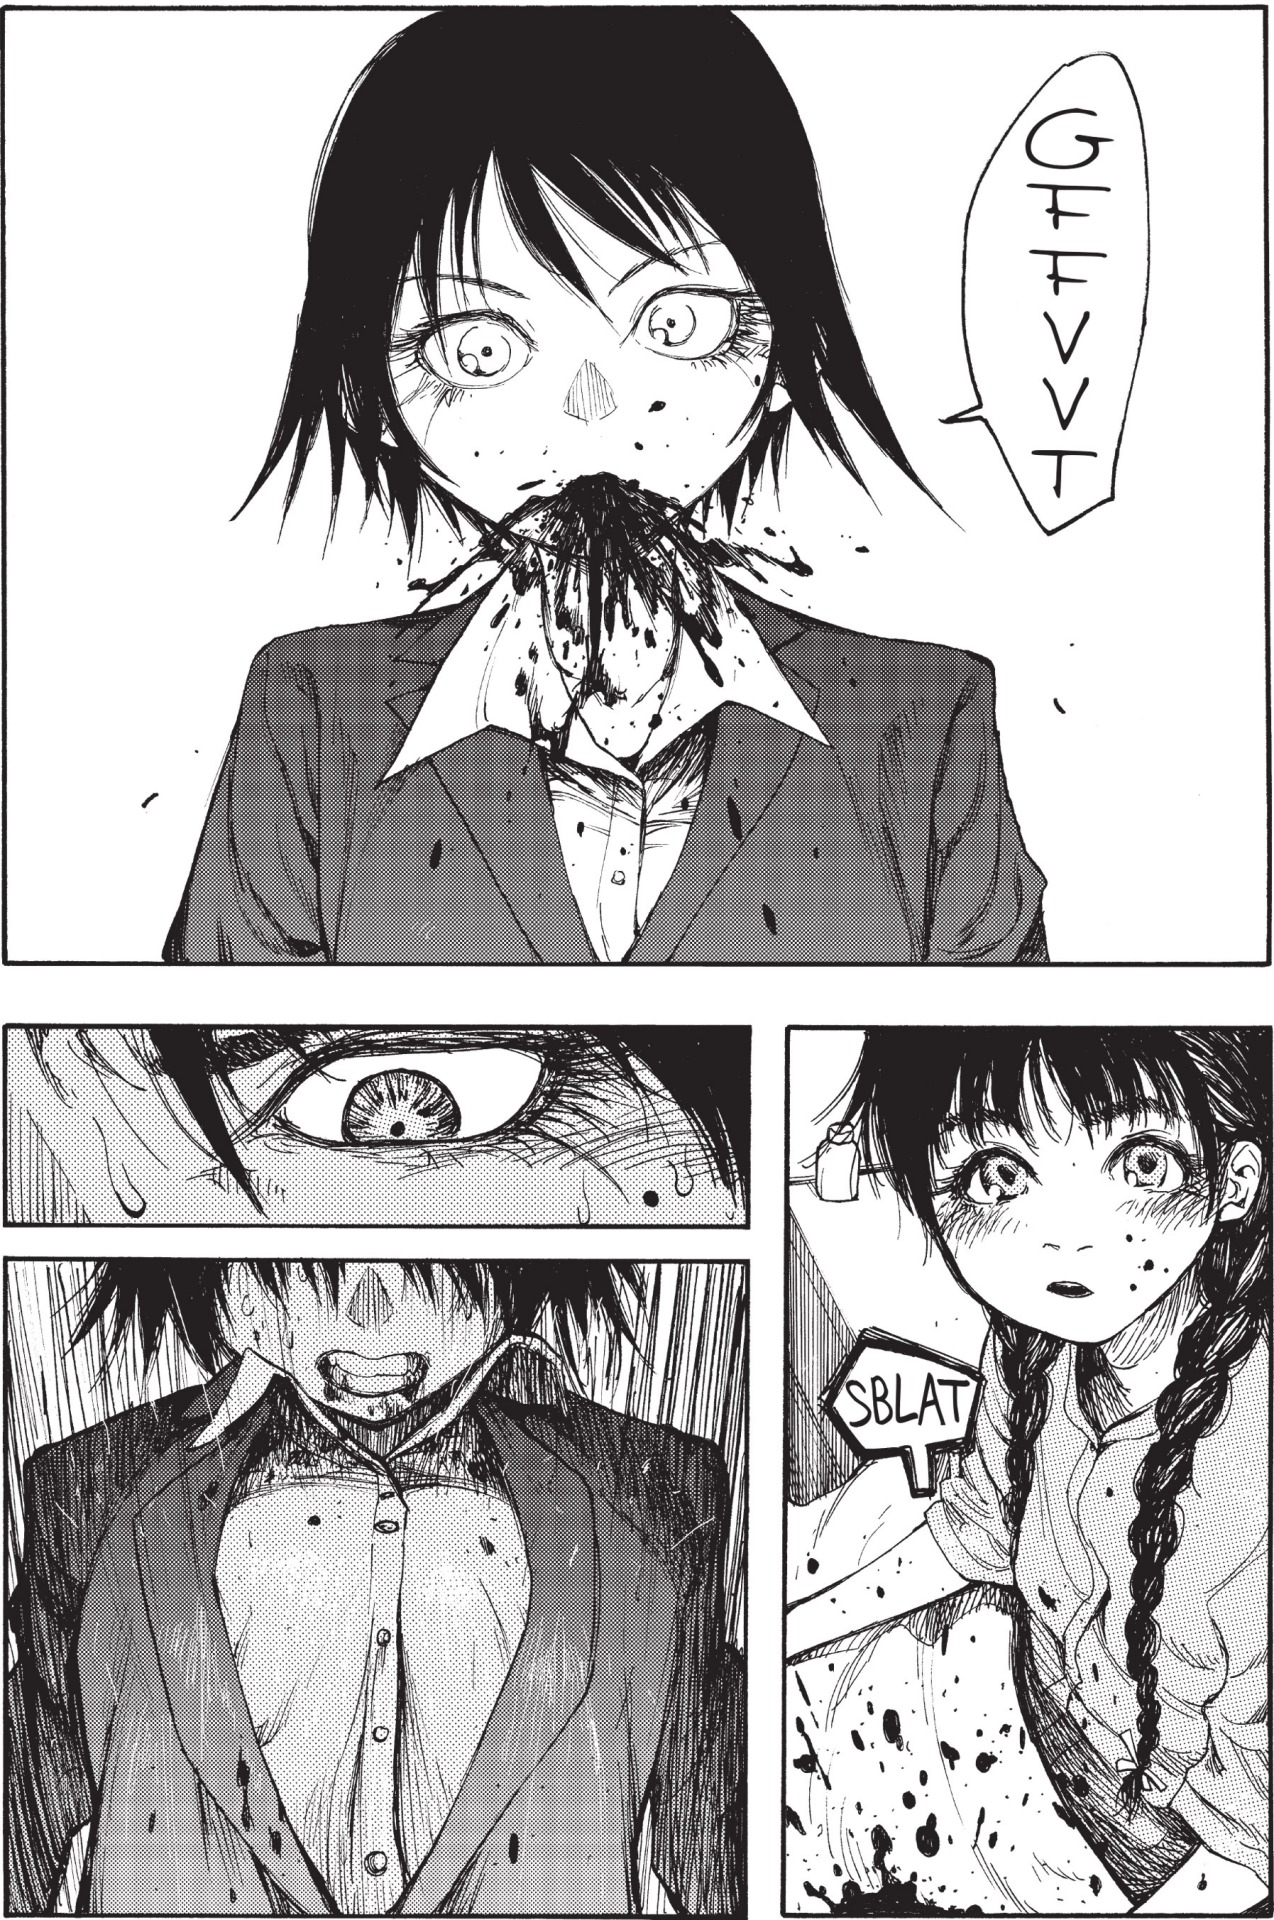 Manga and Stuff — Source: Ajin: Demi-Human / 亜人 by Gamon Sakurai